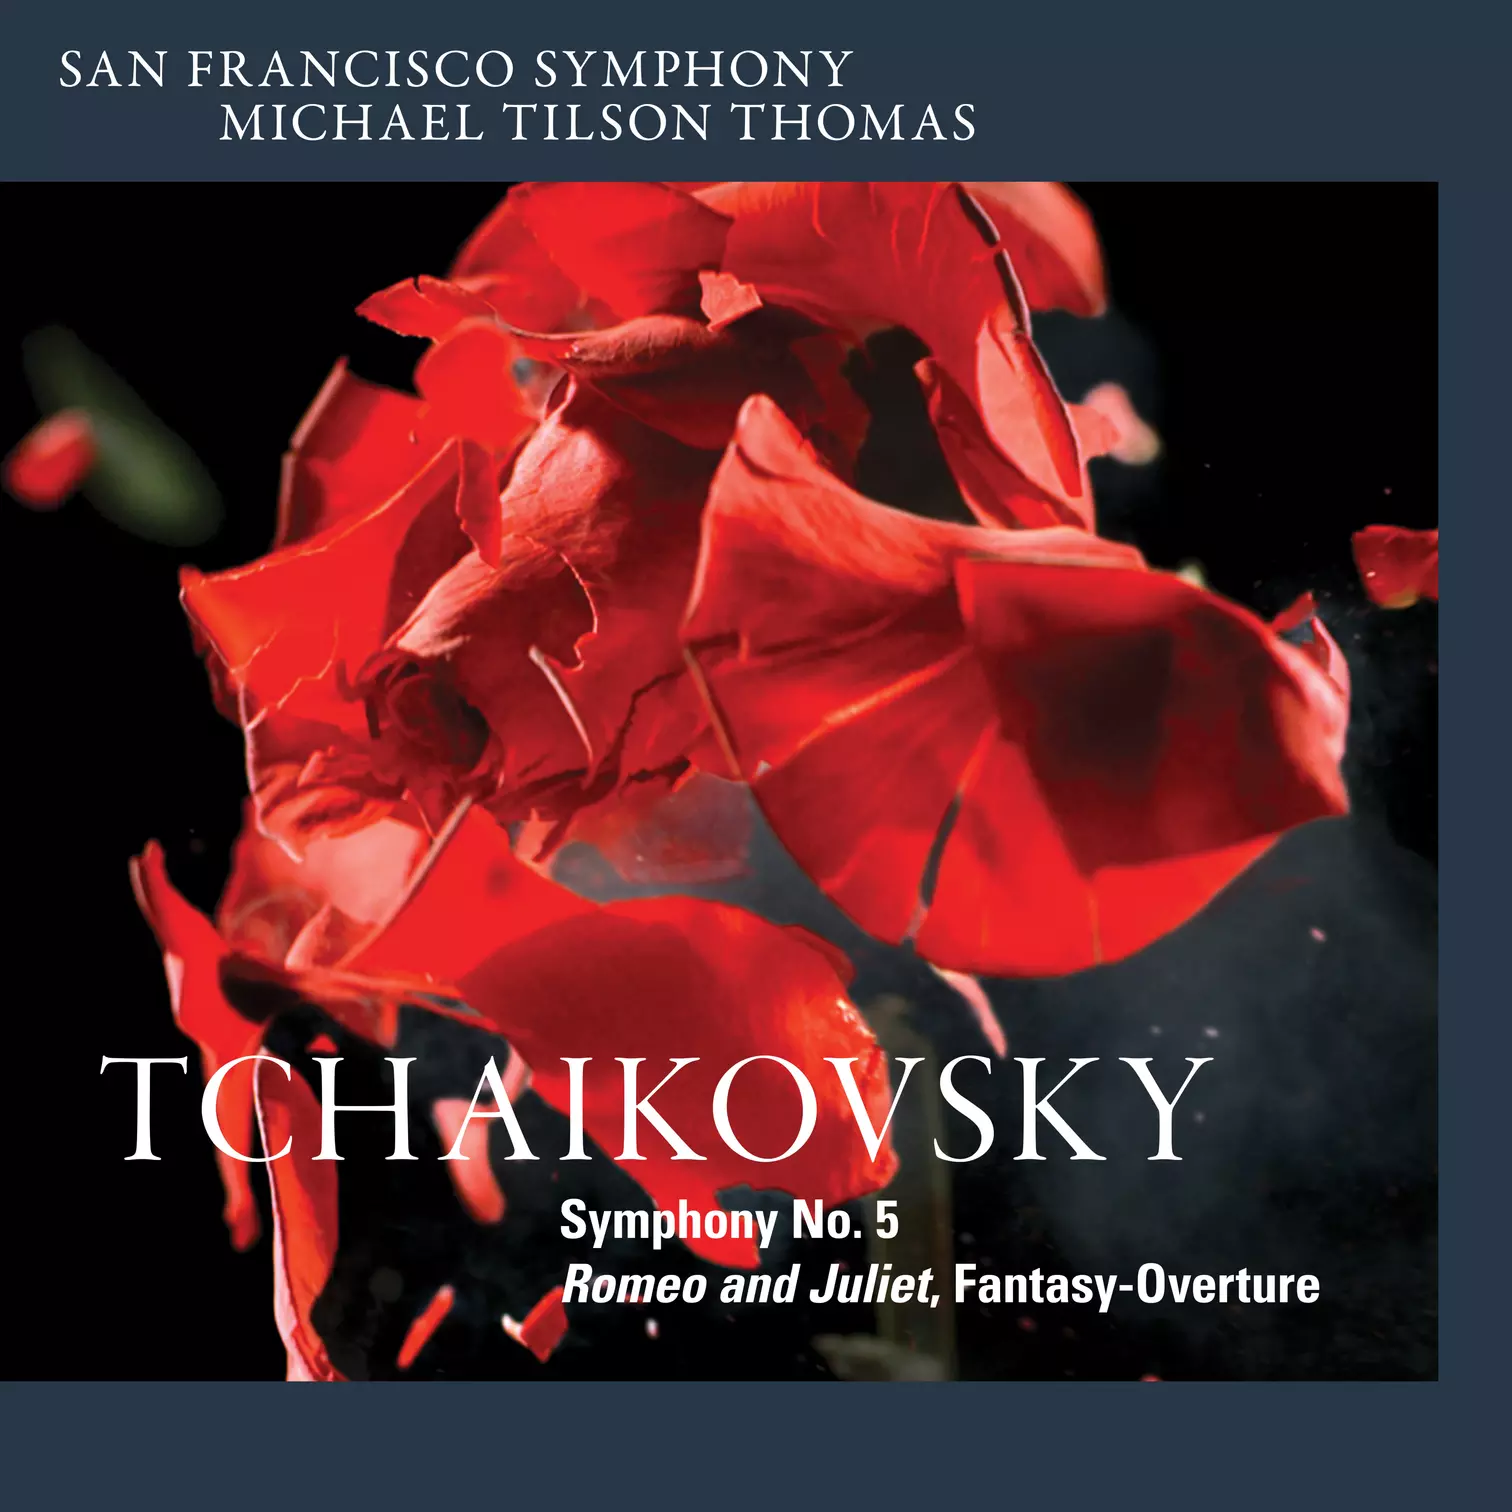 Tchaikovsky: Symphony No. 5 & Romeo and Juliet, Fantasy-Overture